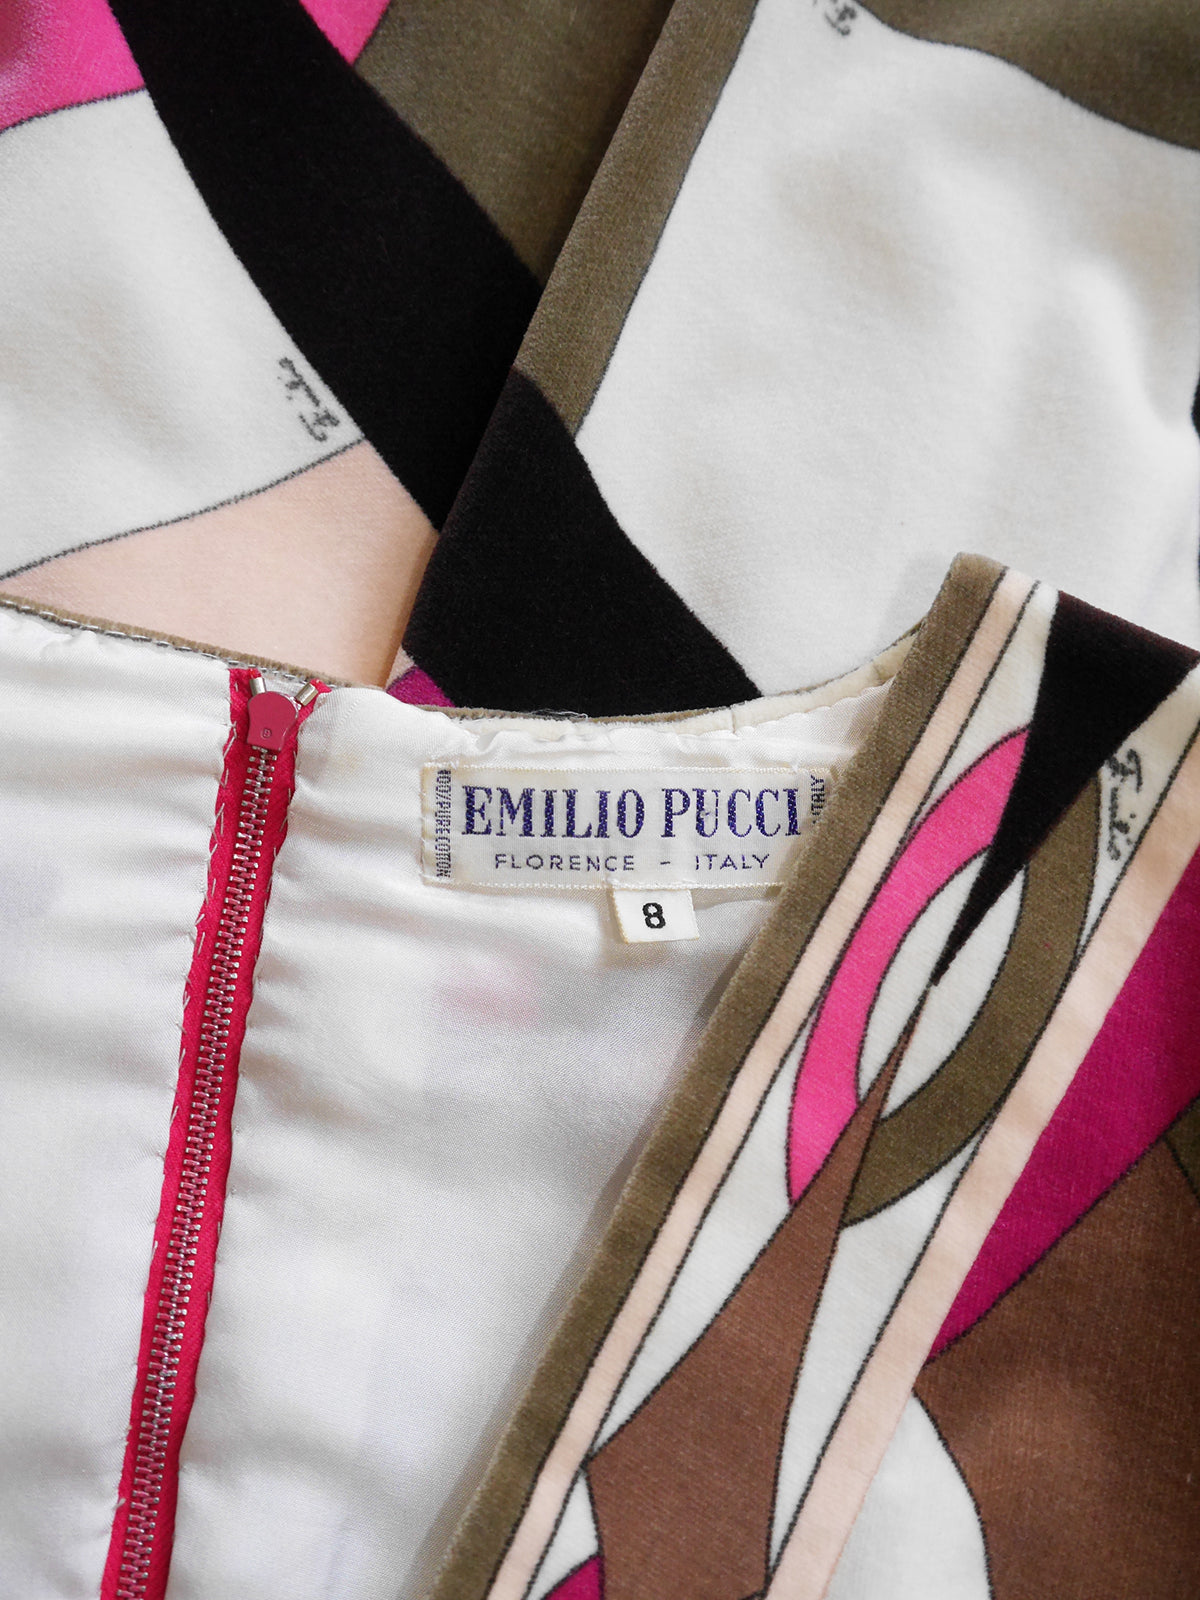 EMILIO PUCCI 1960s 1970s Vintage Signature Print Velvet Dress Size XS